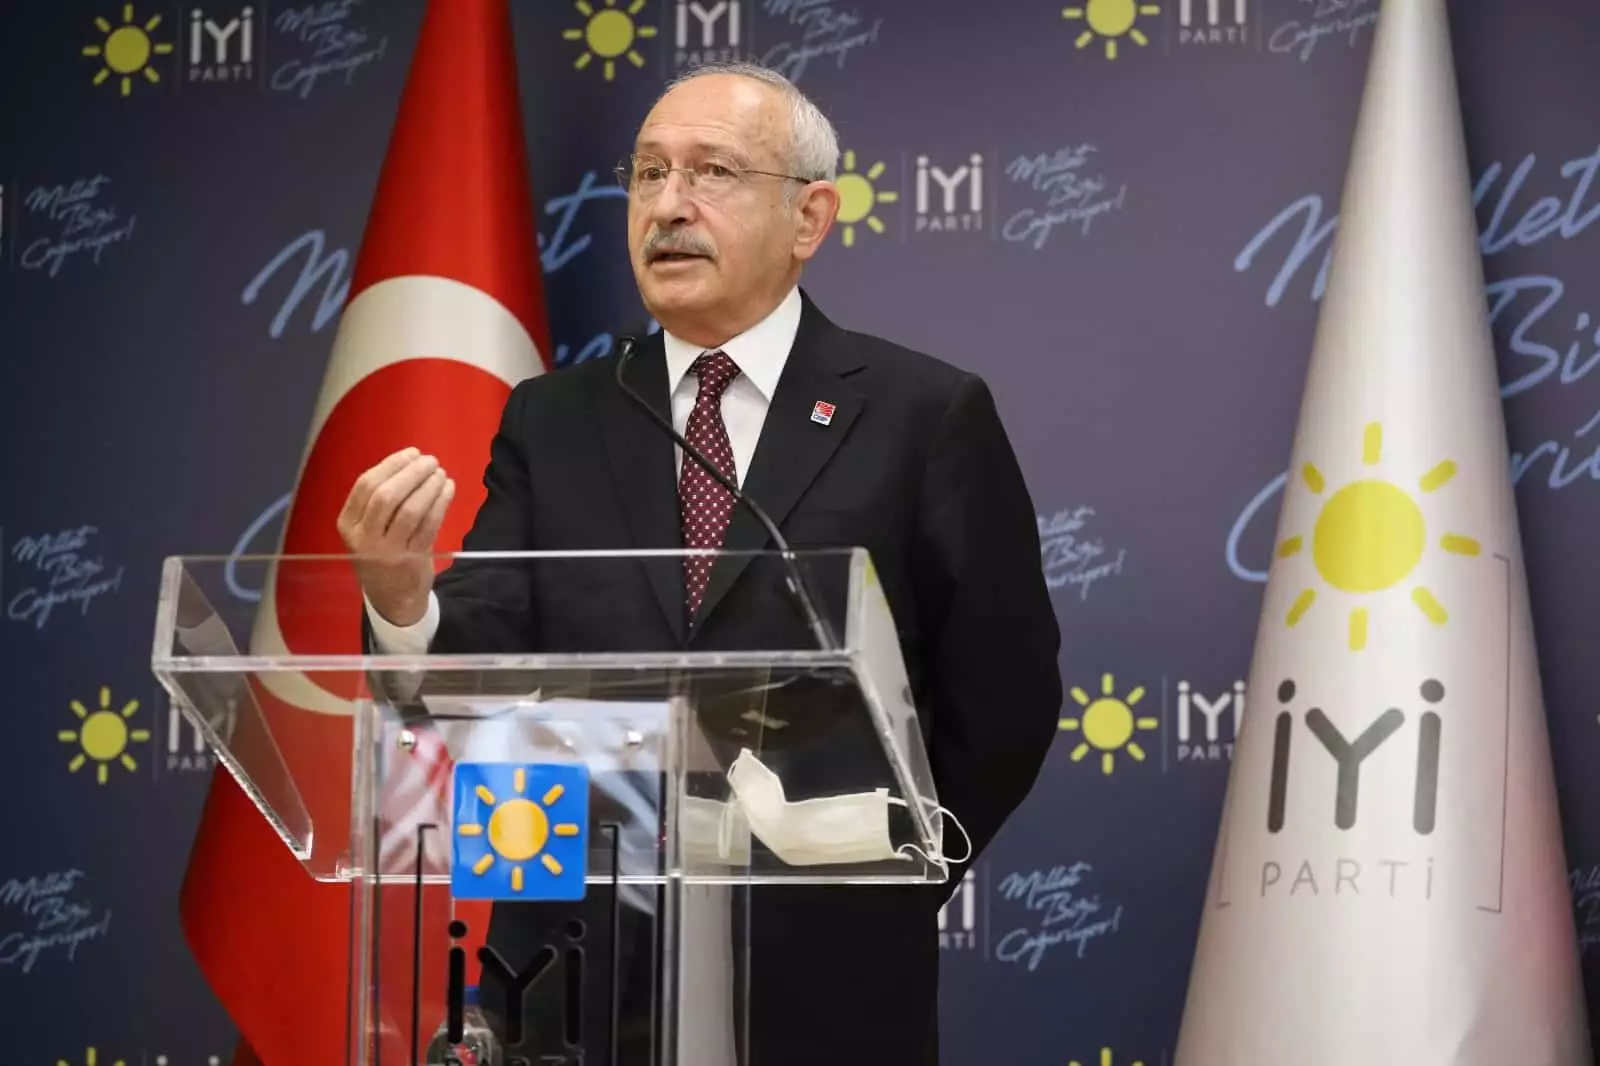 Chp genel başkanı kemal kılıçdaroğlu ve i̇yi̇ parti genel başkanı meral akşener, görüşmenin ardından ortak basın toplantısı düzenledi.